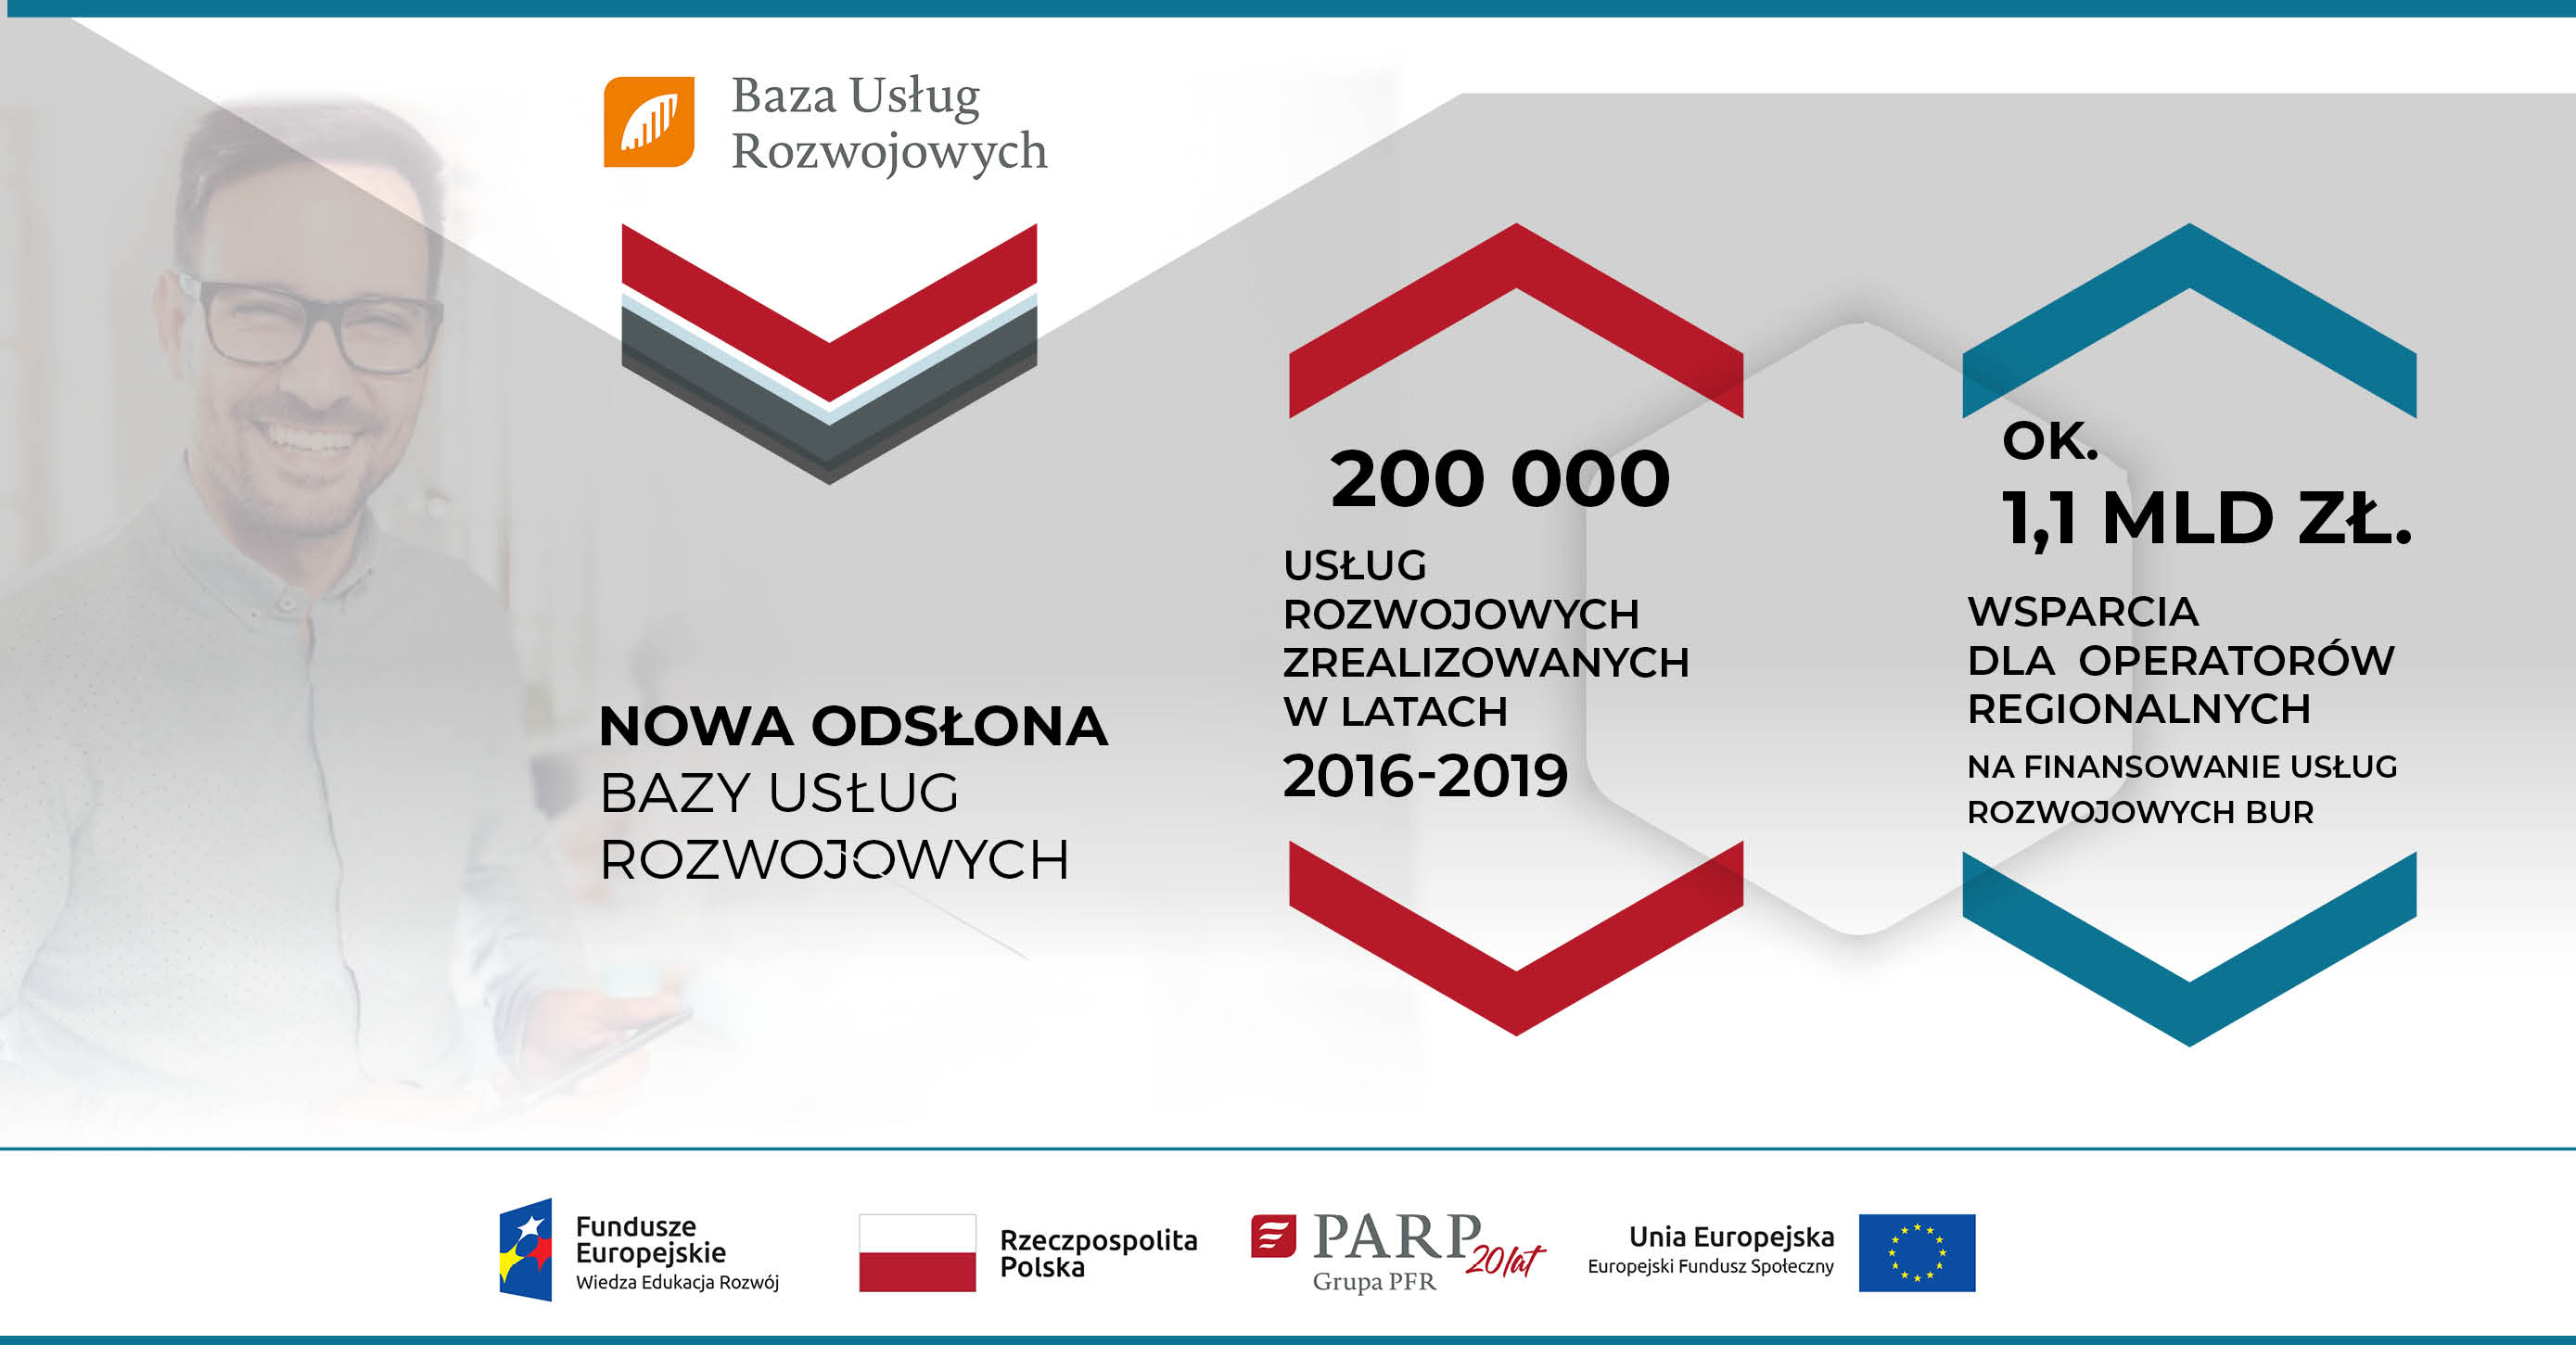 Nowa odsłona Bazy Usług Rozwojowych: 200000 usług rozwojowych zrealizowanych w latach 2016-2019; ok. 1,1 mld zł wsparcia dla operatorów regionalnych na finansowanie usług rozwojowych BUR